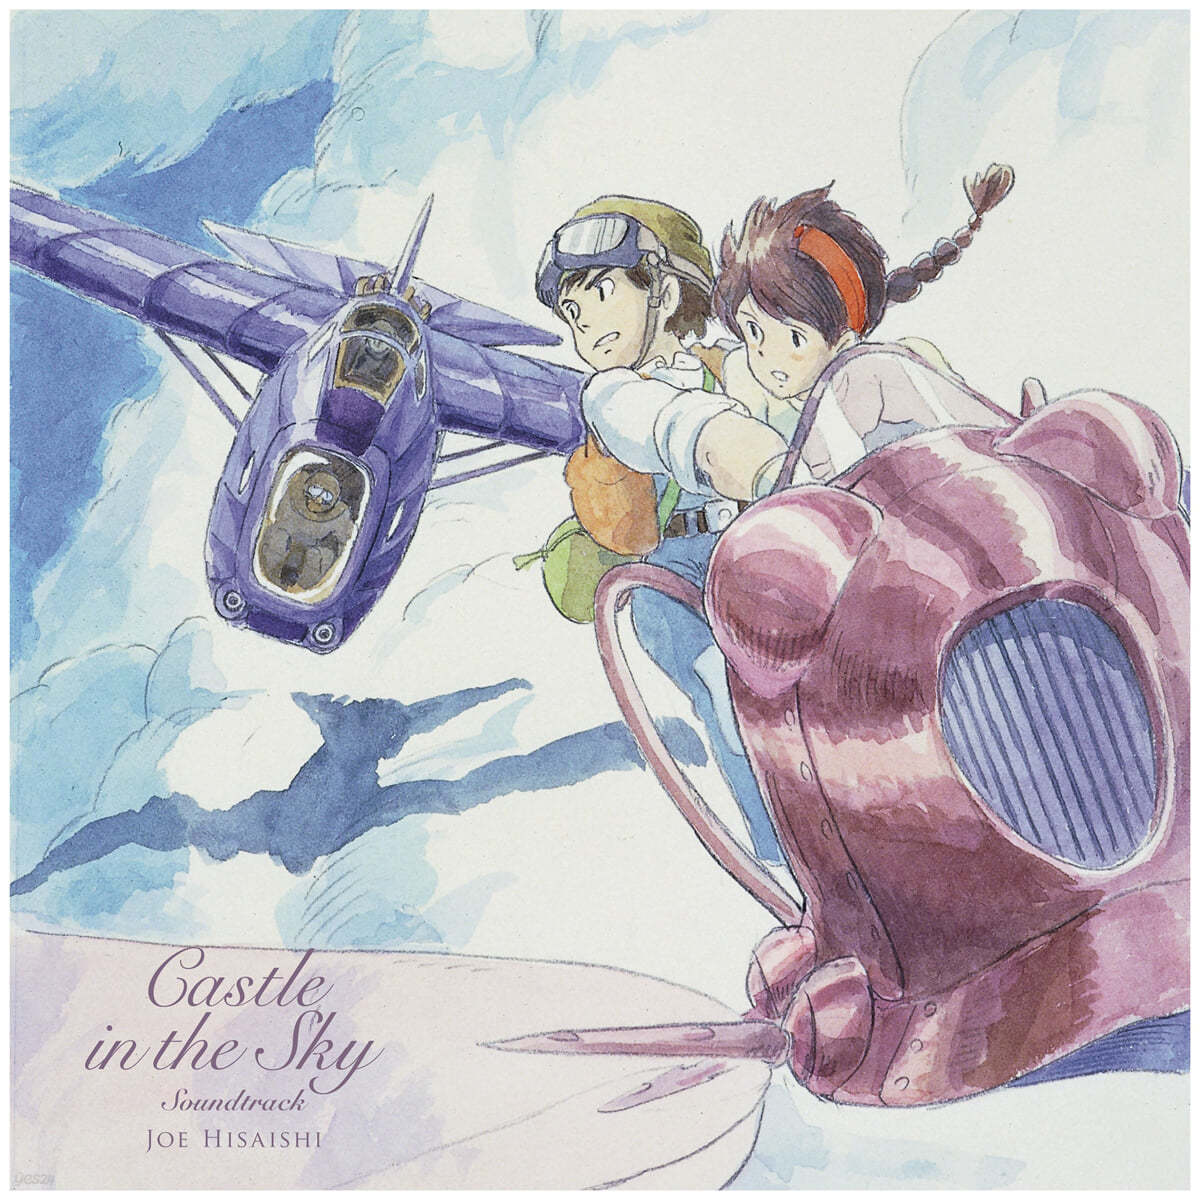 천공의 성 라퓨타 - 미국 버전 영화음악 (Castle in the Sky - USA Version OST by Hisaishi Joe) [2LP]